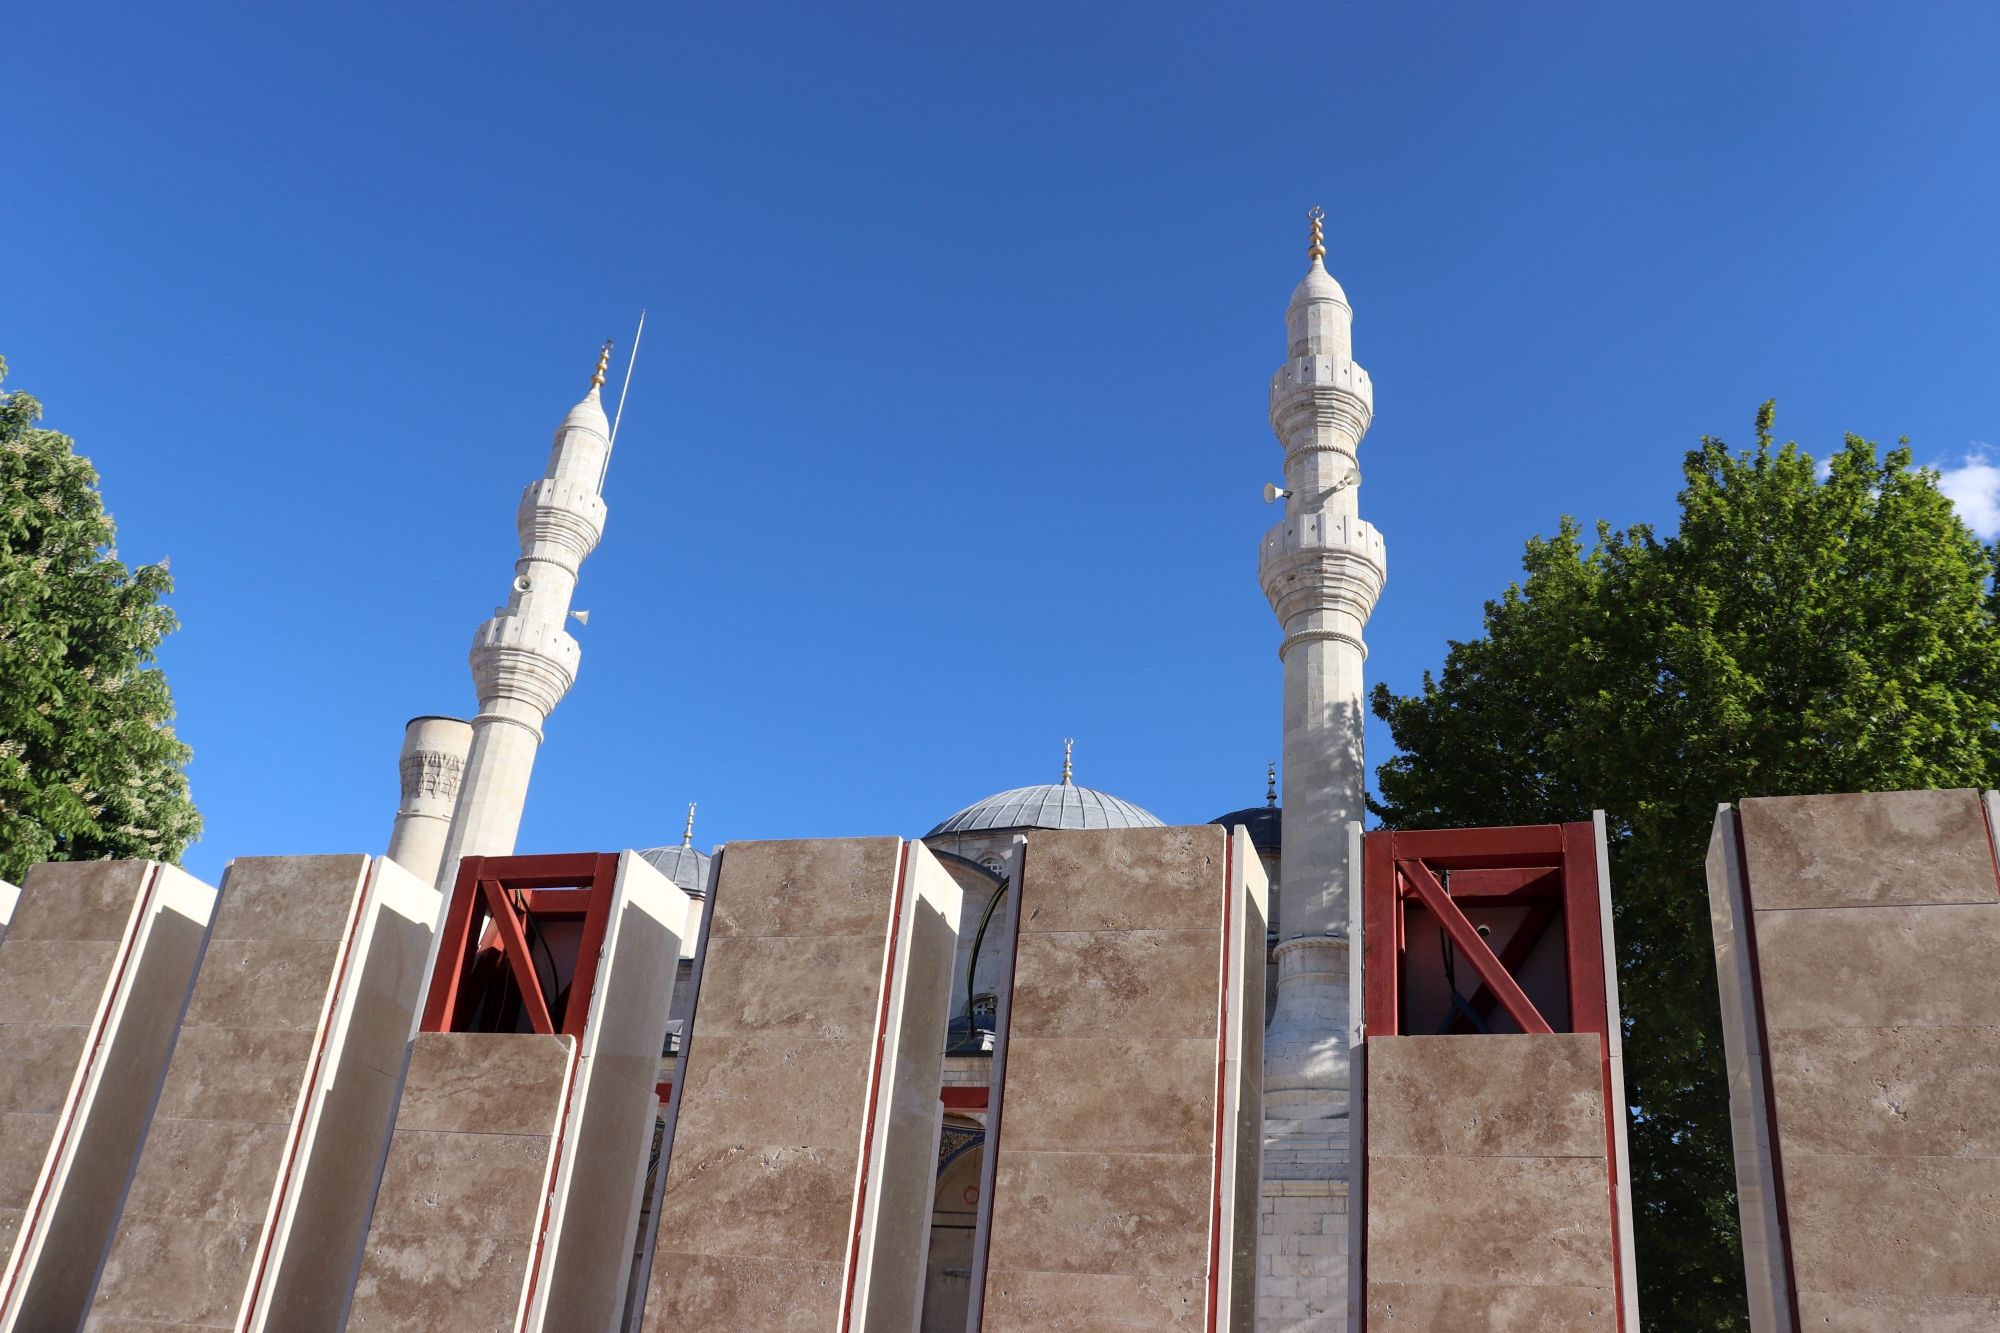 24 Ocak 2020'deki Sivrice merkezli 6.8'lik Elazığ- Malatya depreminden ciddi hasar görerek ibadete kapatılan, yaklaşık 10 ay sonra restorasyon ve onarım çalışmalarına başlanan, geçtğimiz Ramazan ayının başlangıcında da ibadete alınan Yeni Cami'nin  (Teze Cami) avlusunun çevresine yapılan ve caminin görünümünü engellediği gibi, çevre ile bağlantısını koparan 'duvar'a, yapım aşamasında gösterilen tepkilere kulak asılmadı ve duvar tamamlandı. Duvarın yıkılması için Malatya’daki 46 STK temsilcisinin ortak imzası ile basın açıklaması yapıldı.